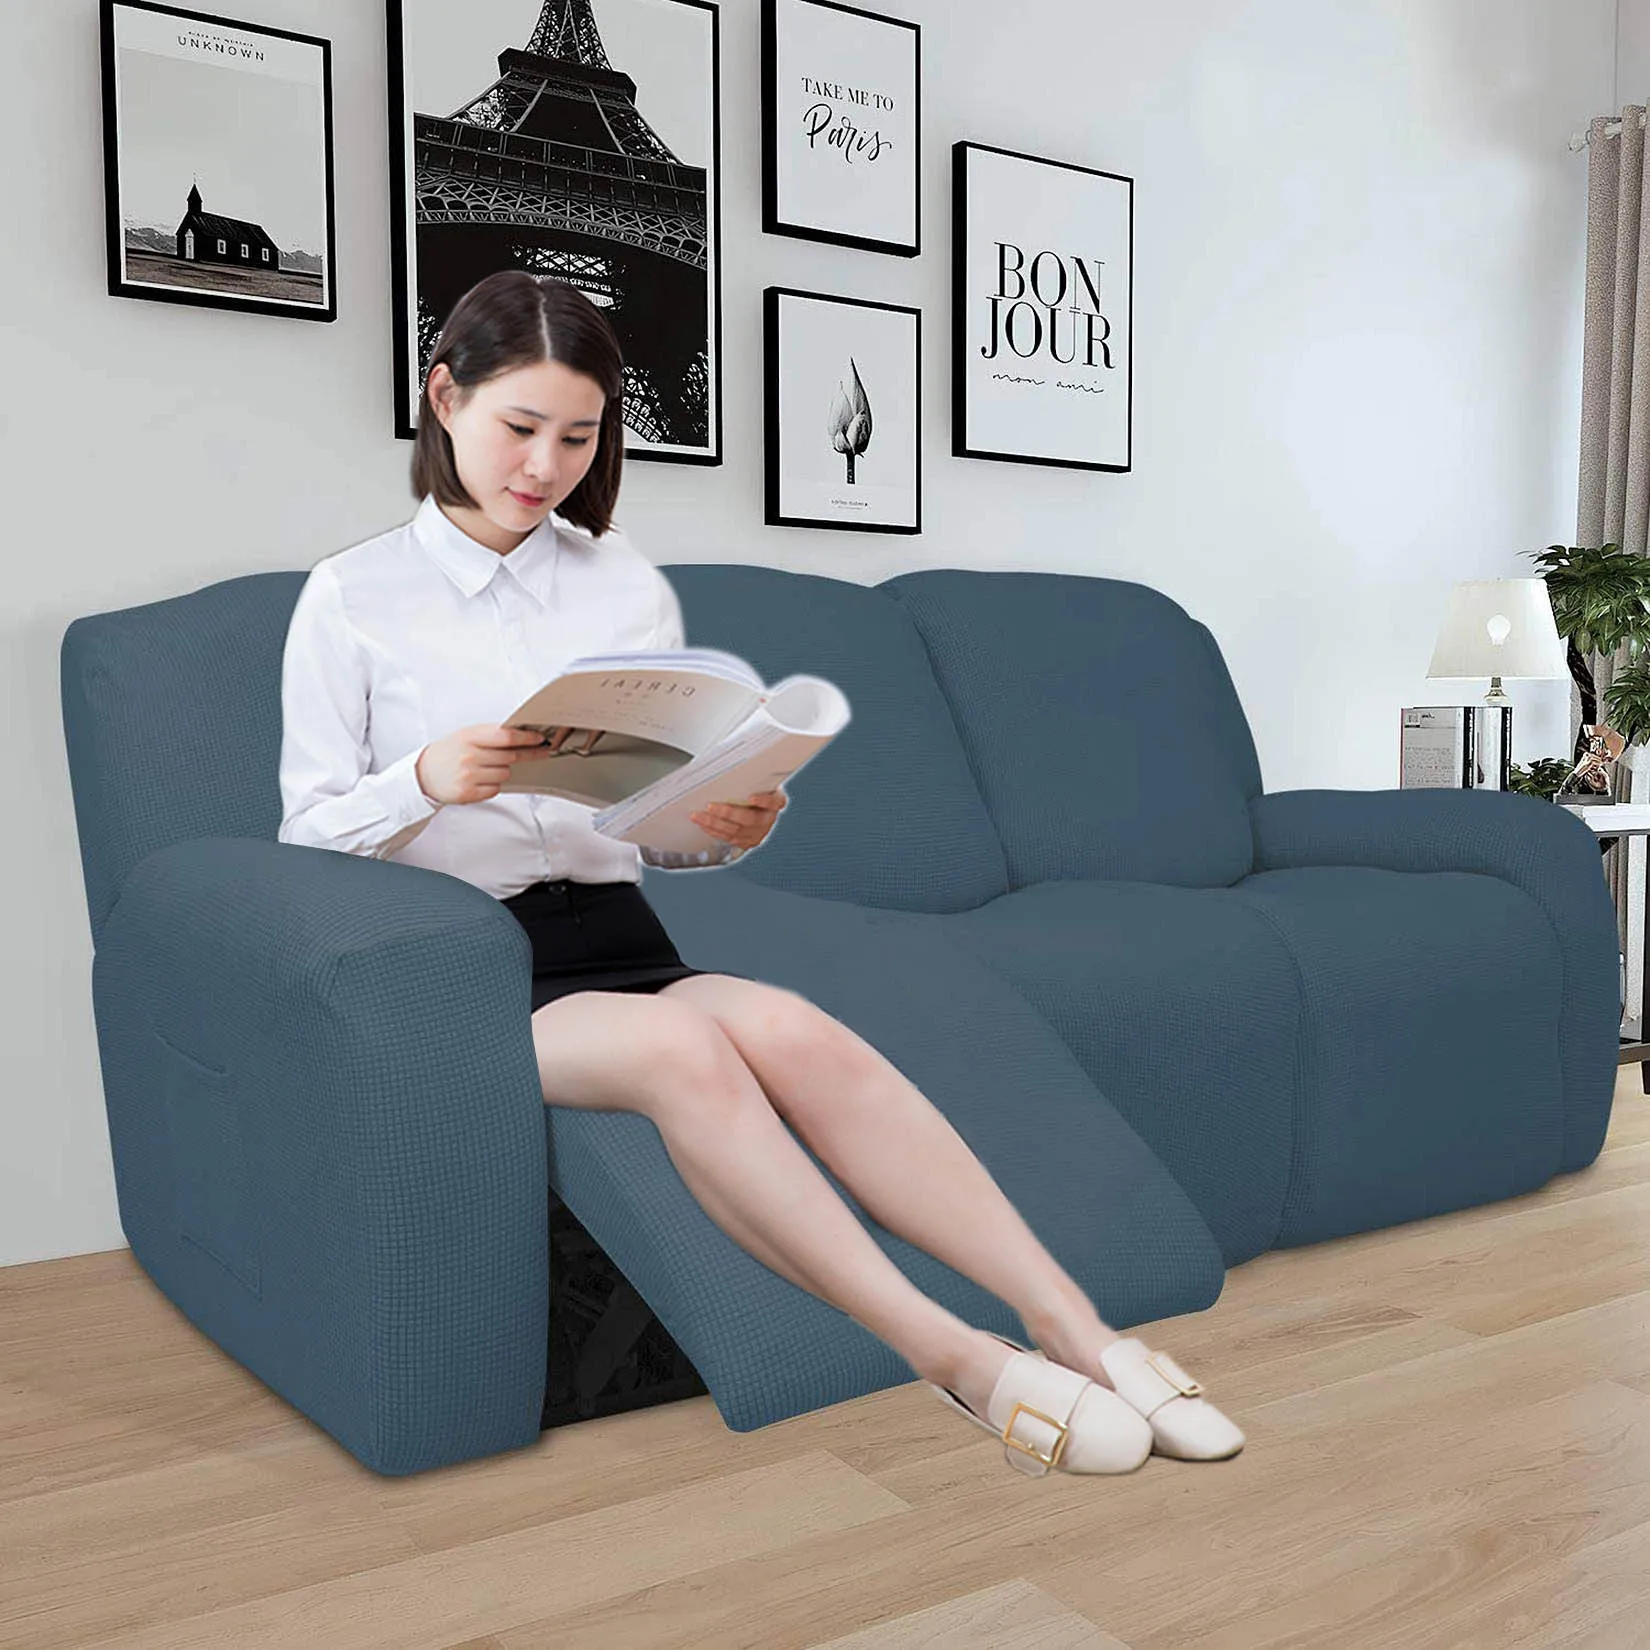 sofás reclinables fundas protectoras de muebles Hruile Juego de 2 fundas antideslizantes para reposabrazos de sillón fundas elásticas para sillones color azul 